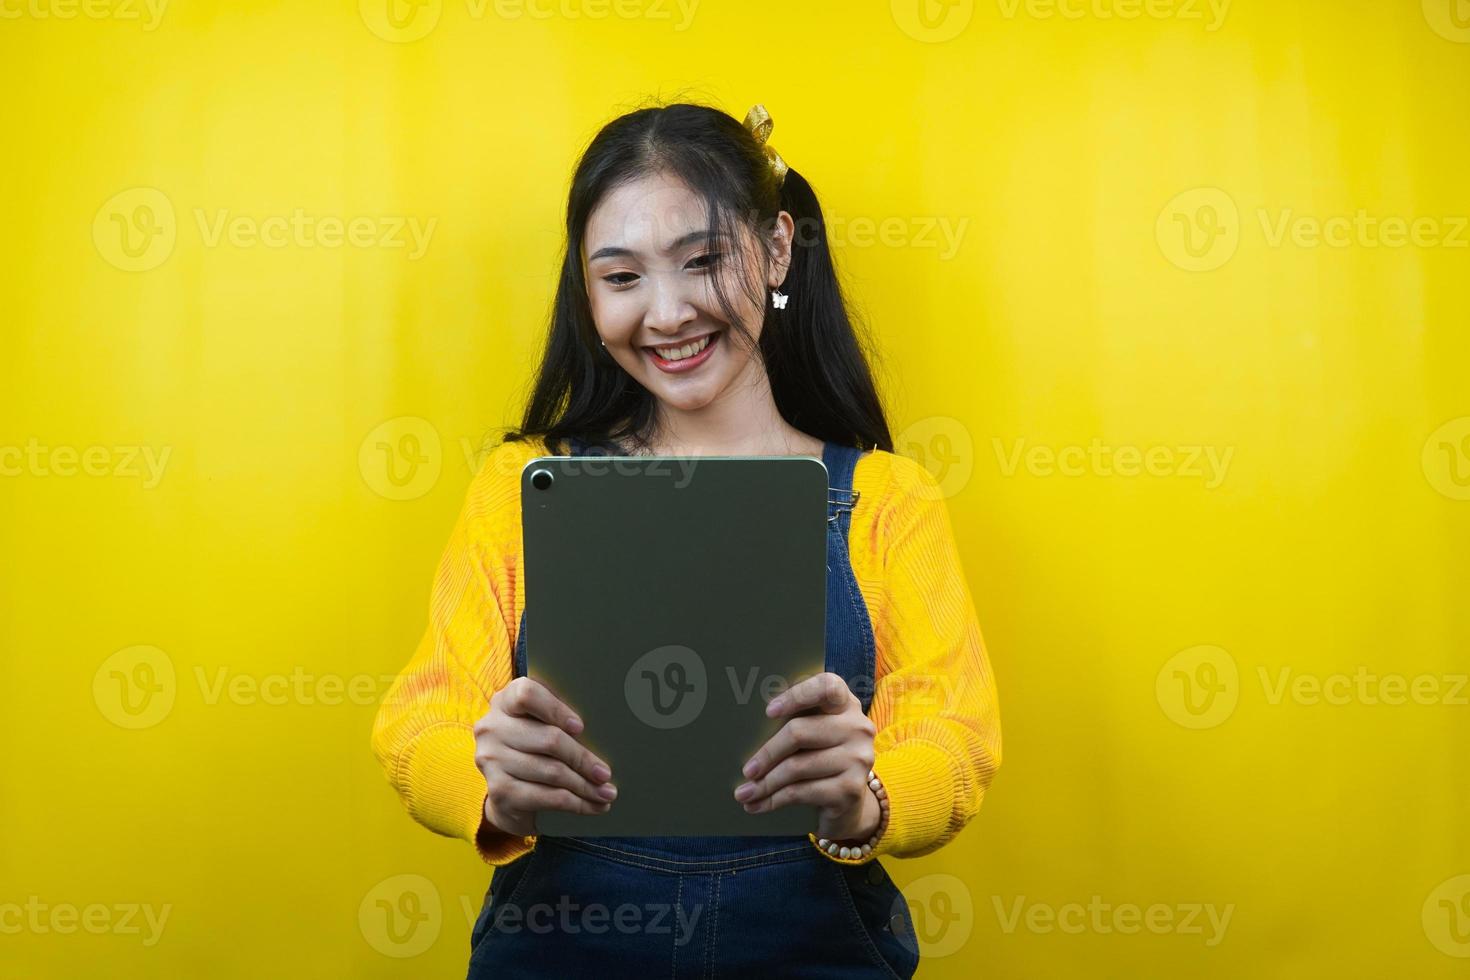 jovem bonita e fofa alegre, confiante, mão segurando o tablet, apresentando algo, promovendo produto, anúncio, isolado foto